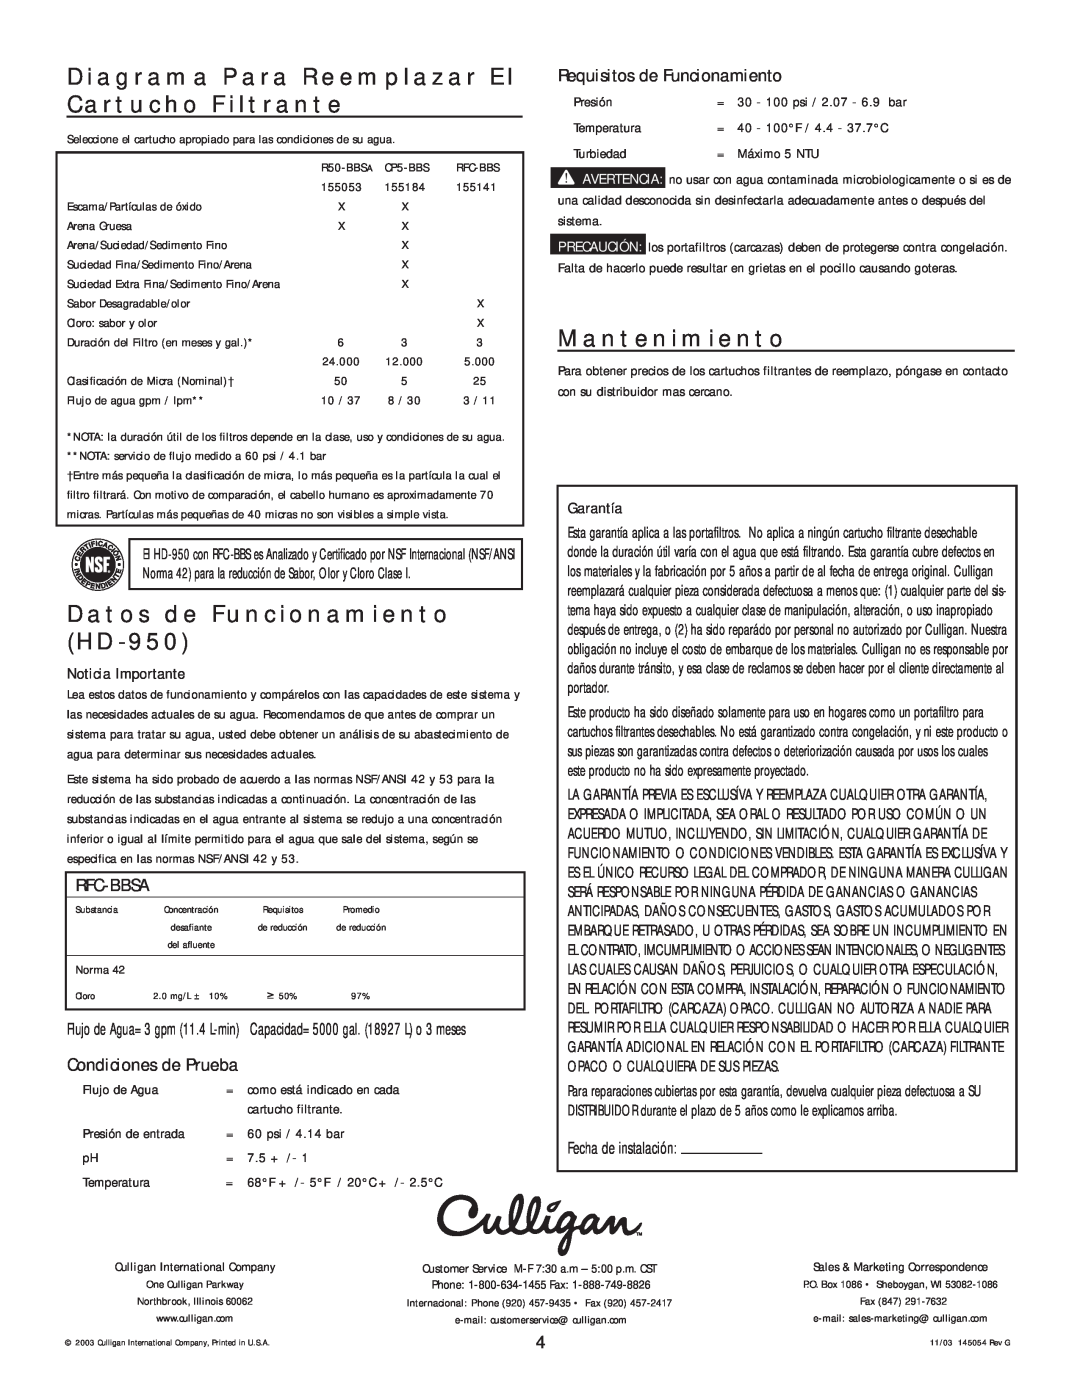 Kenmore manual Diagrama Para Reemplazar El Cartucho Filtrante, Datos de Funcionamiento HD-950, Mantenimiento, Rfc-Bbsa 